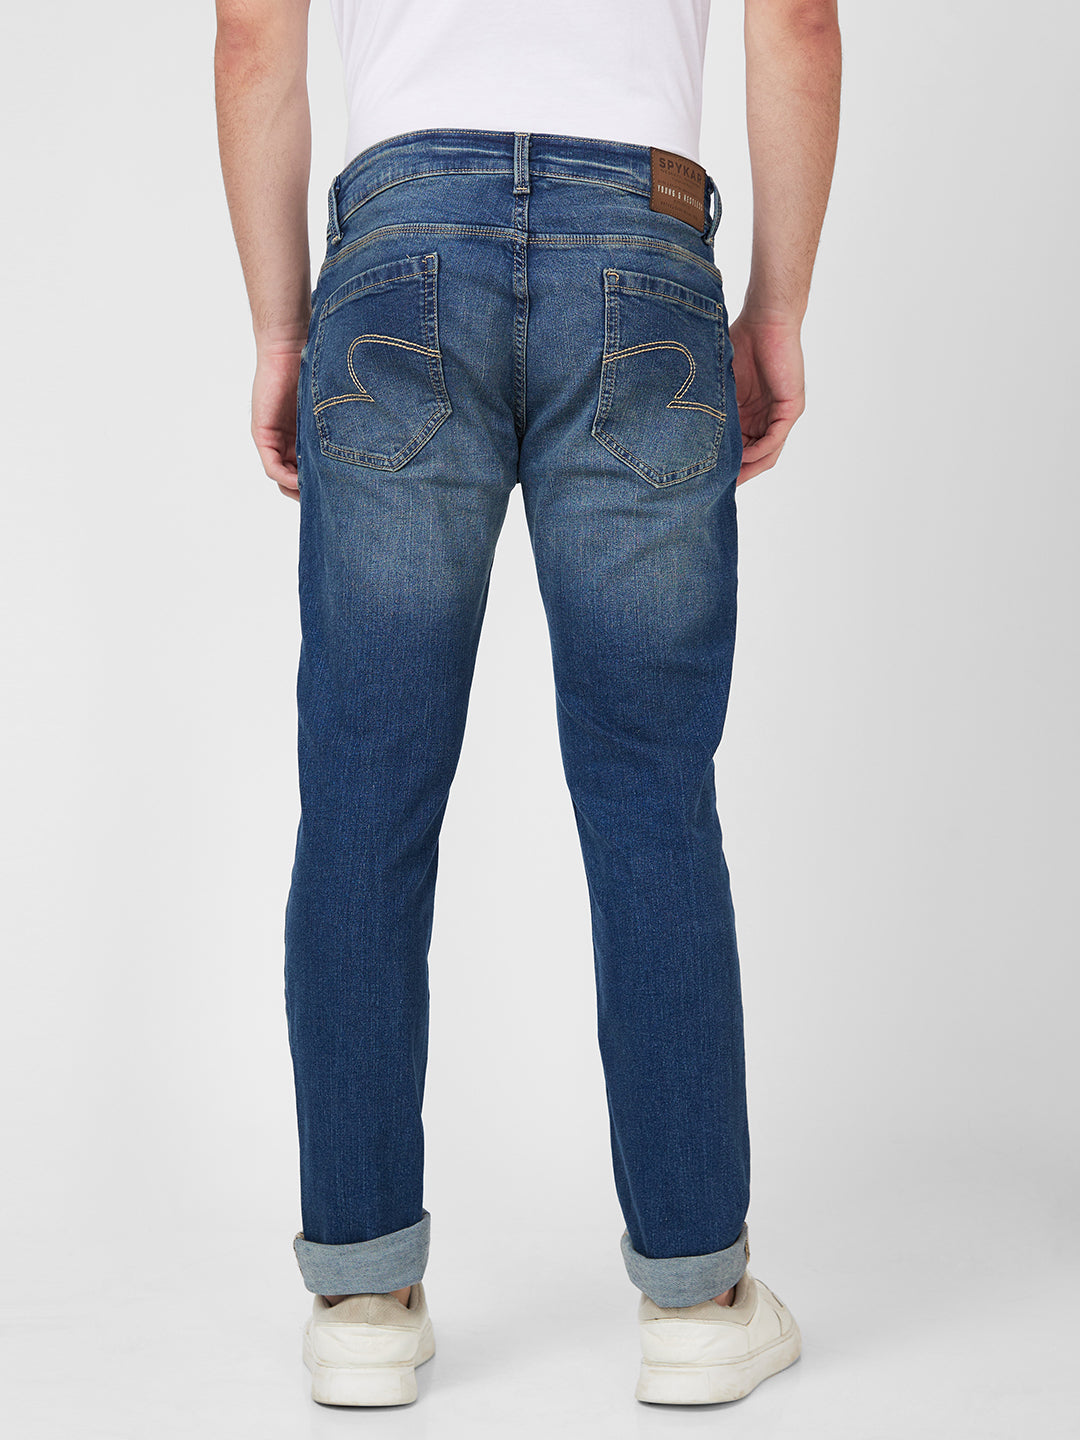 Spykar Mid Rise Regular Fit Narrow Length Blue Jeans For Men